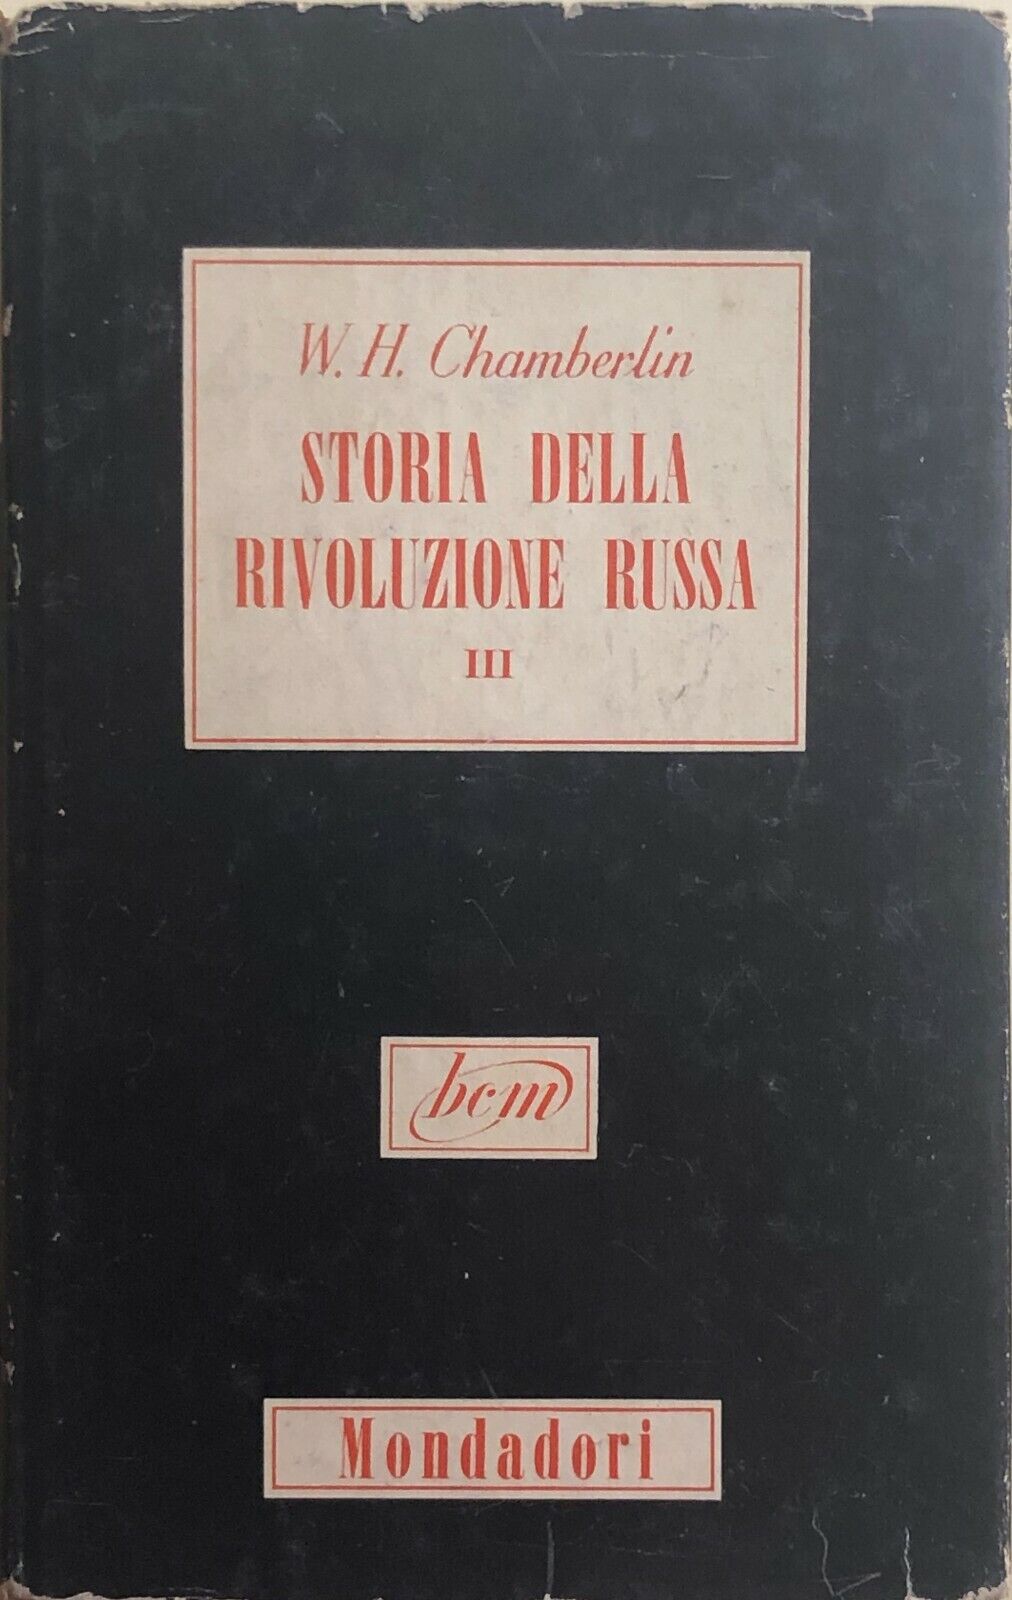 Storia della rivoluzione russa III di W.h. Chamberlin, 1955, Mondadori